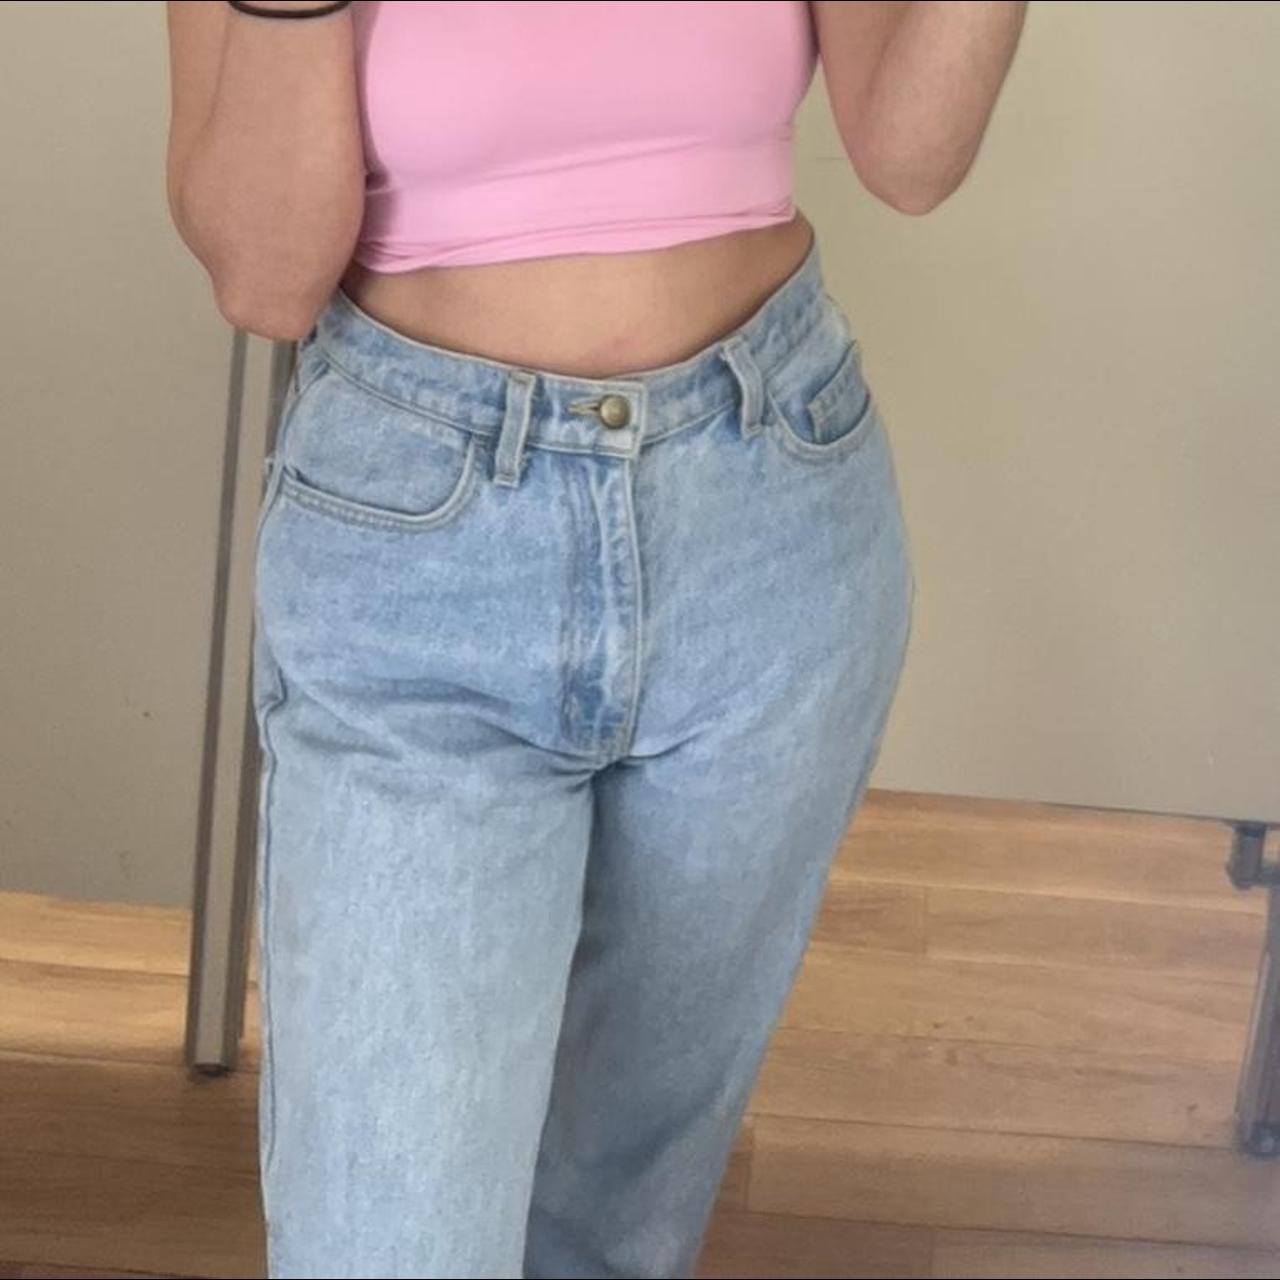 American Apparel Women's Jeans